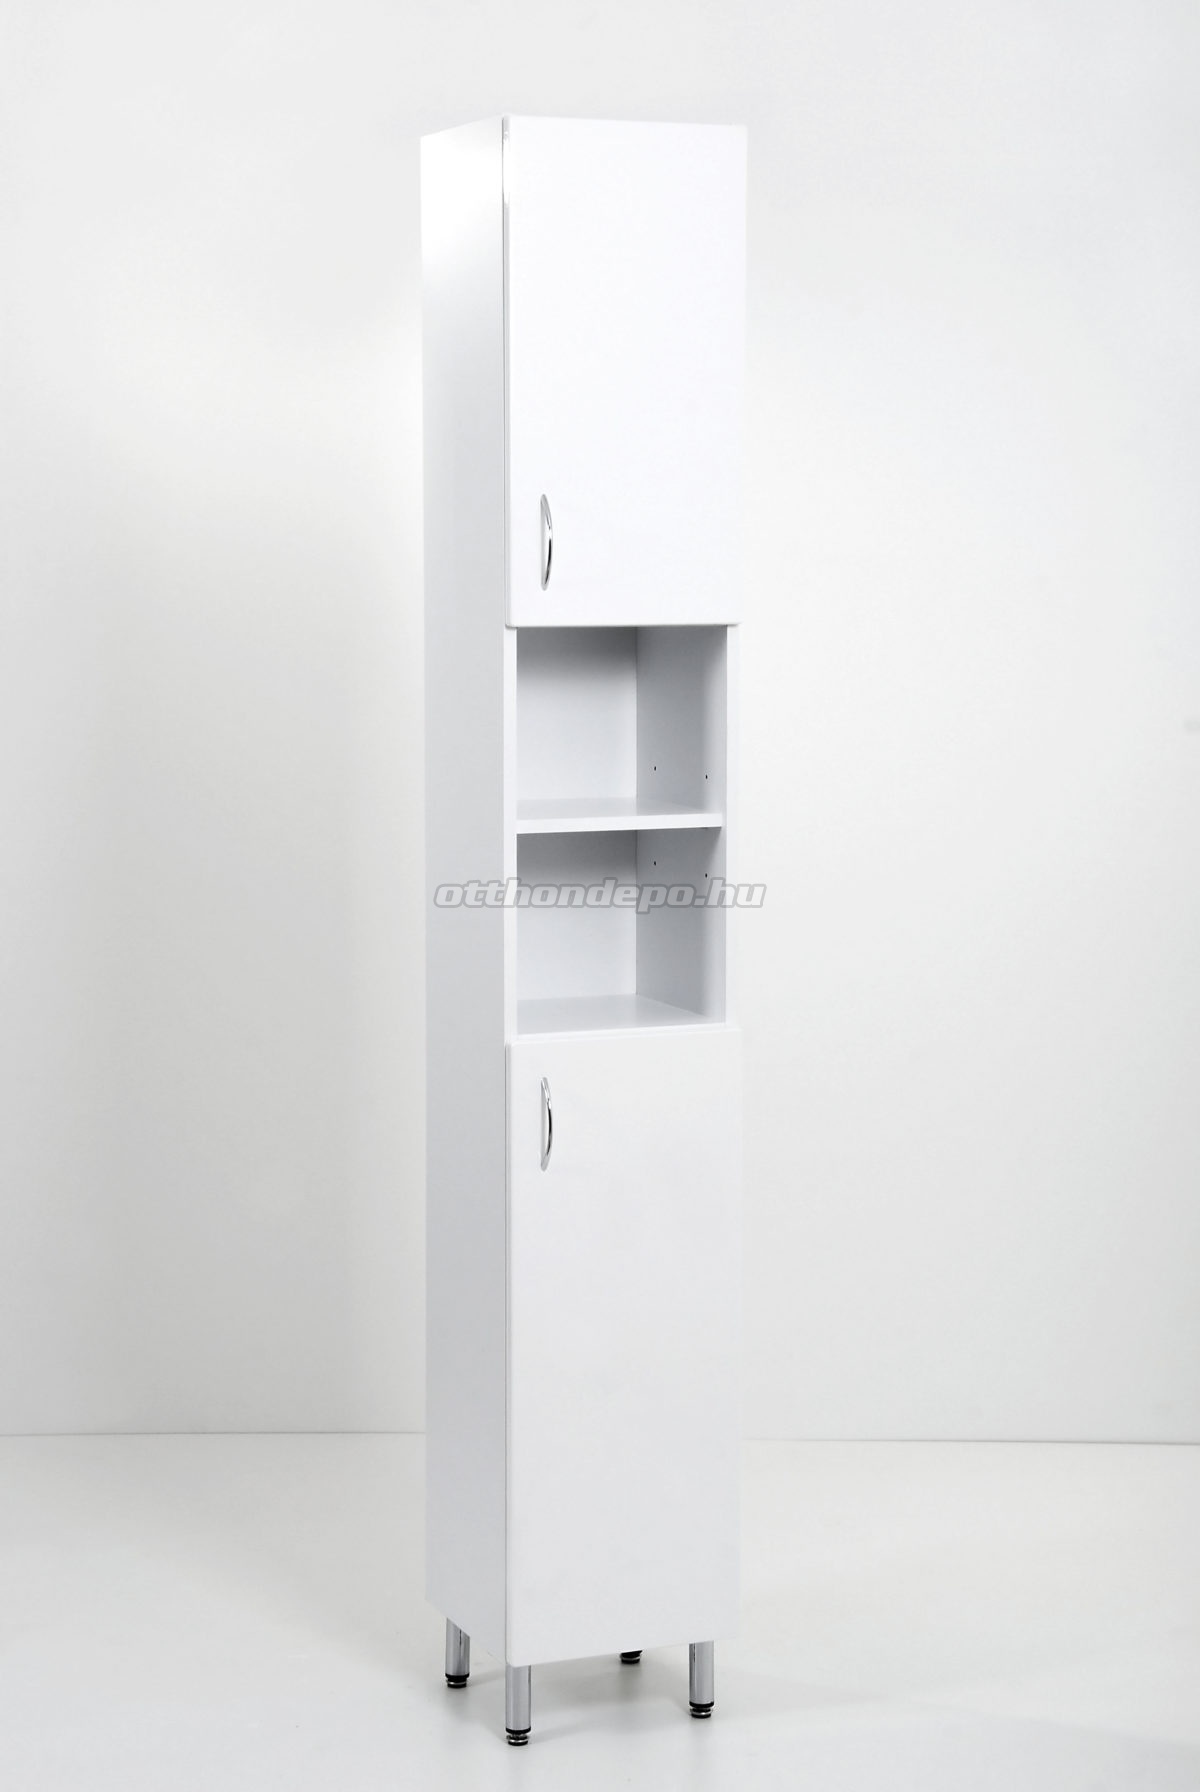 HB Fürdőszobabútor, Standard 30 álló szekrény, 30 cm